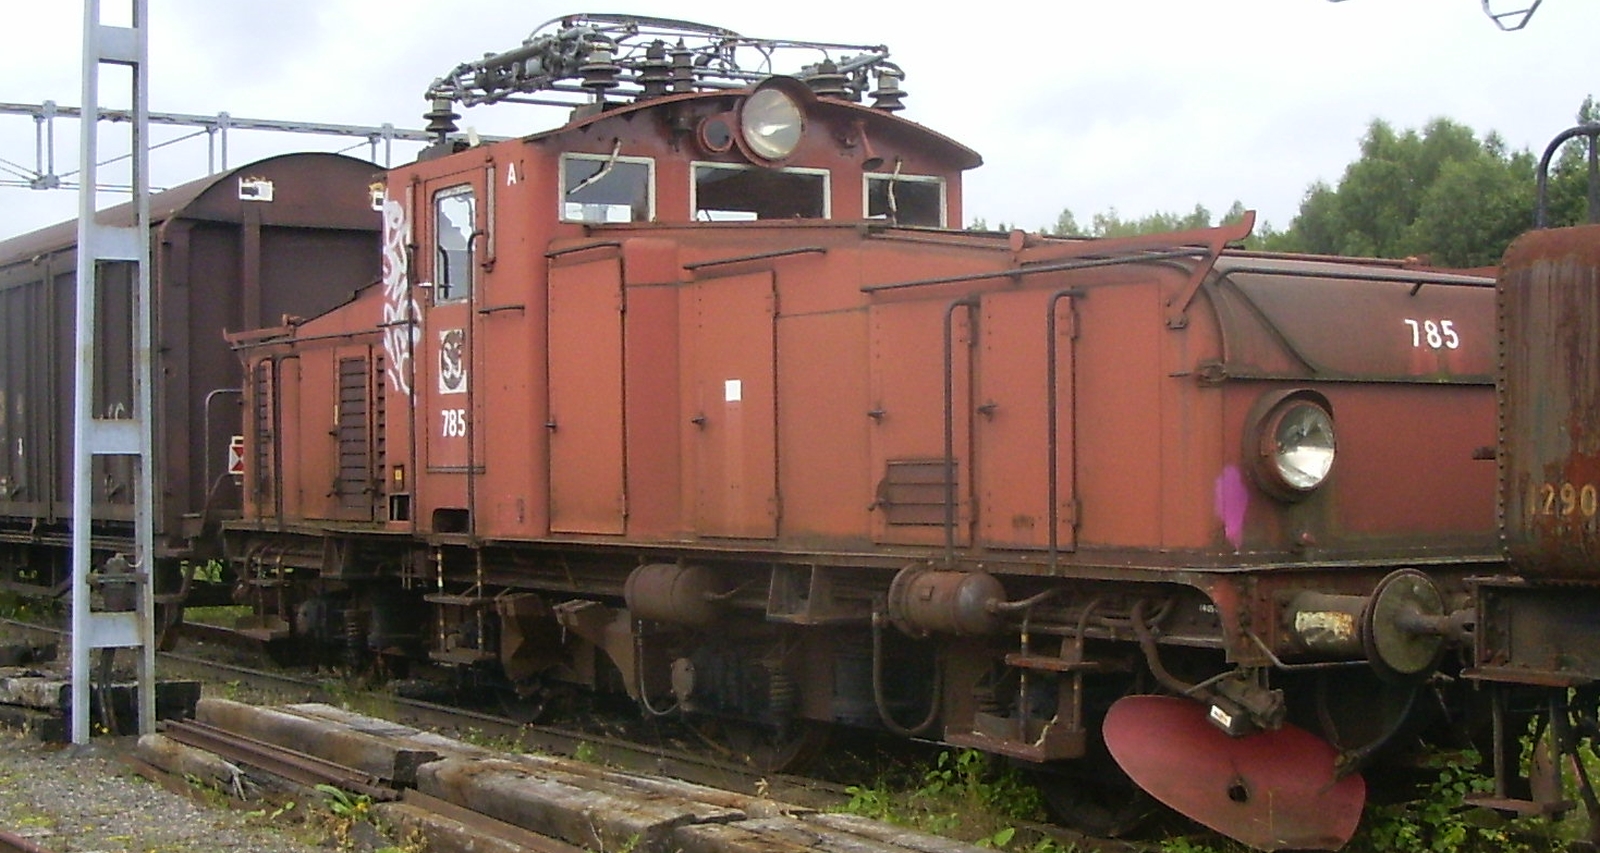 Hg No. 785 in the Grängesberg Railway Museum